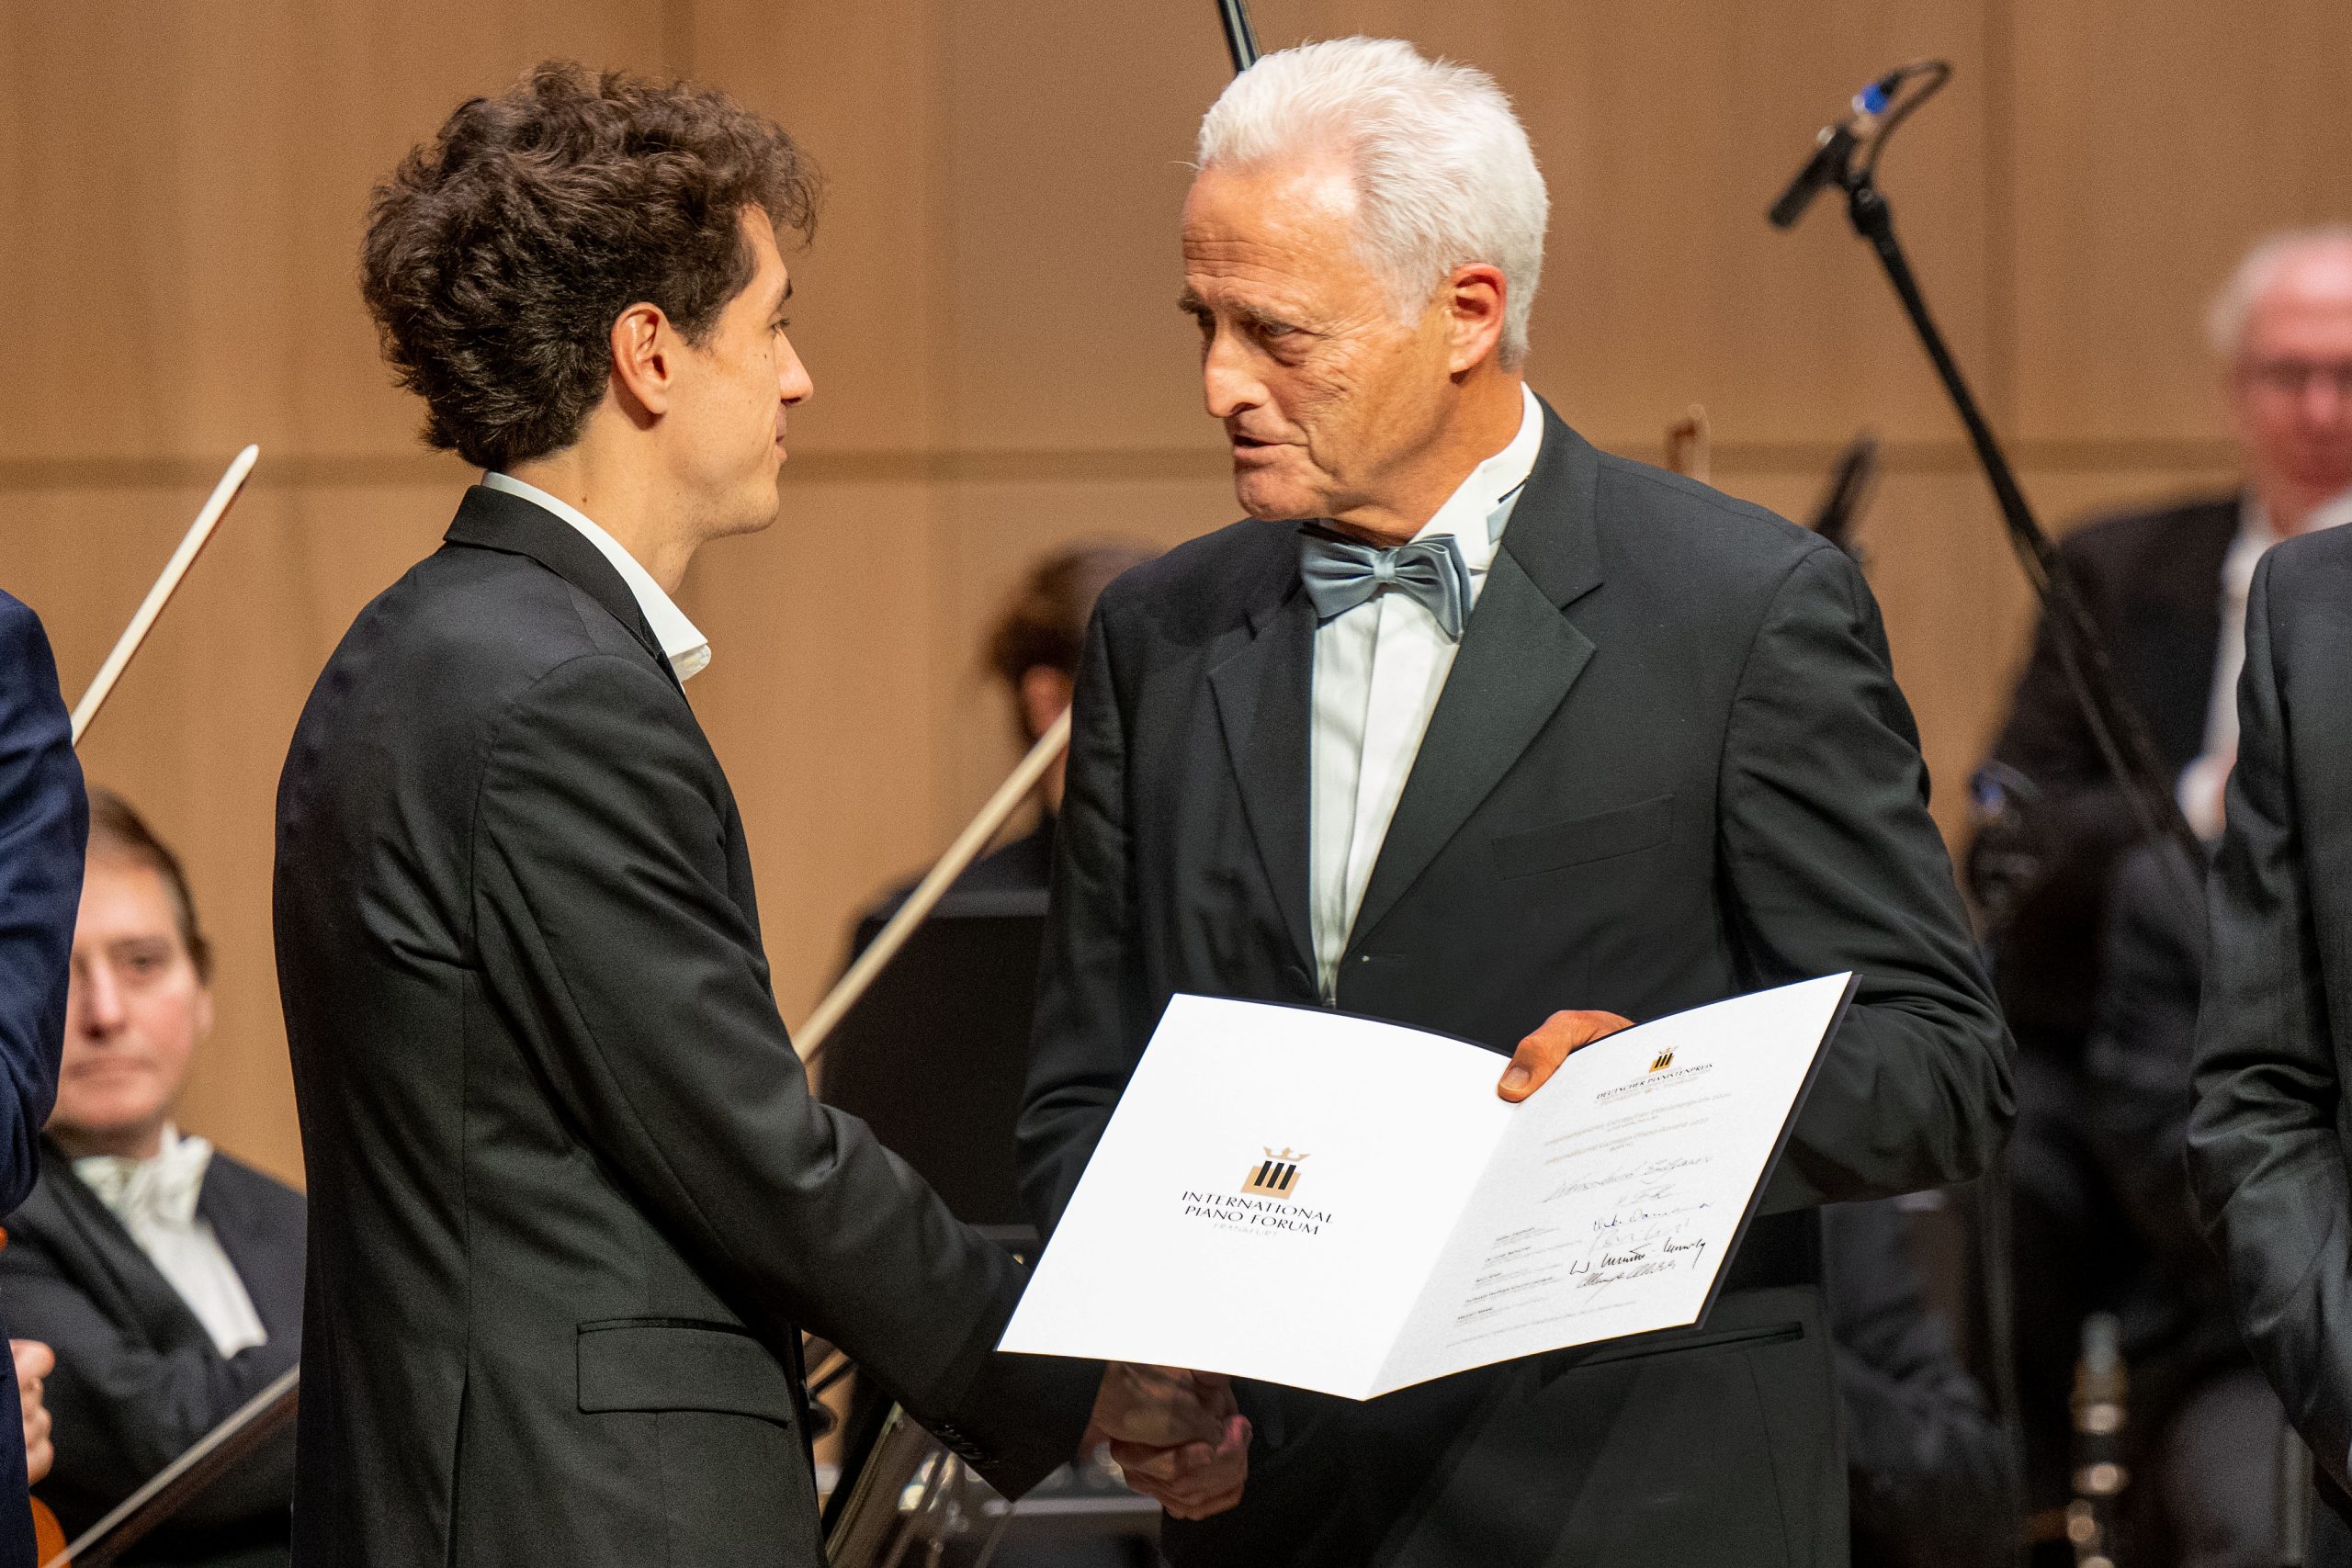 Grand Prix Finanlkonzert des 11. Internationalen Deutschen Pianistenpreis des Internationalen Pianisten Forums im Casals Forum Kronberg/ Taunus